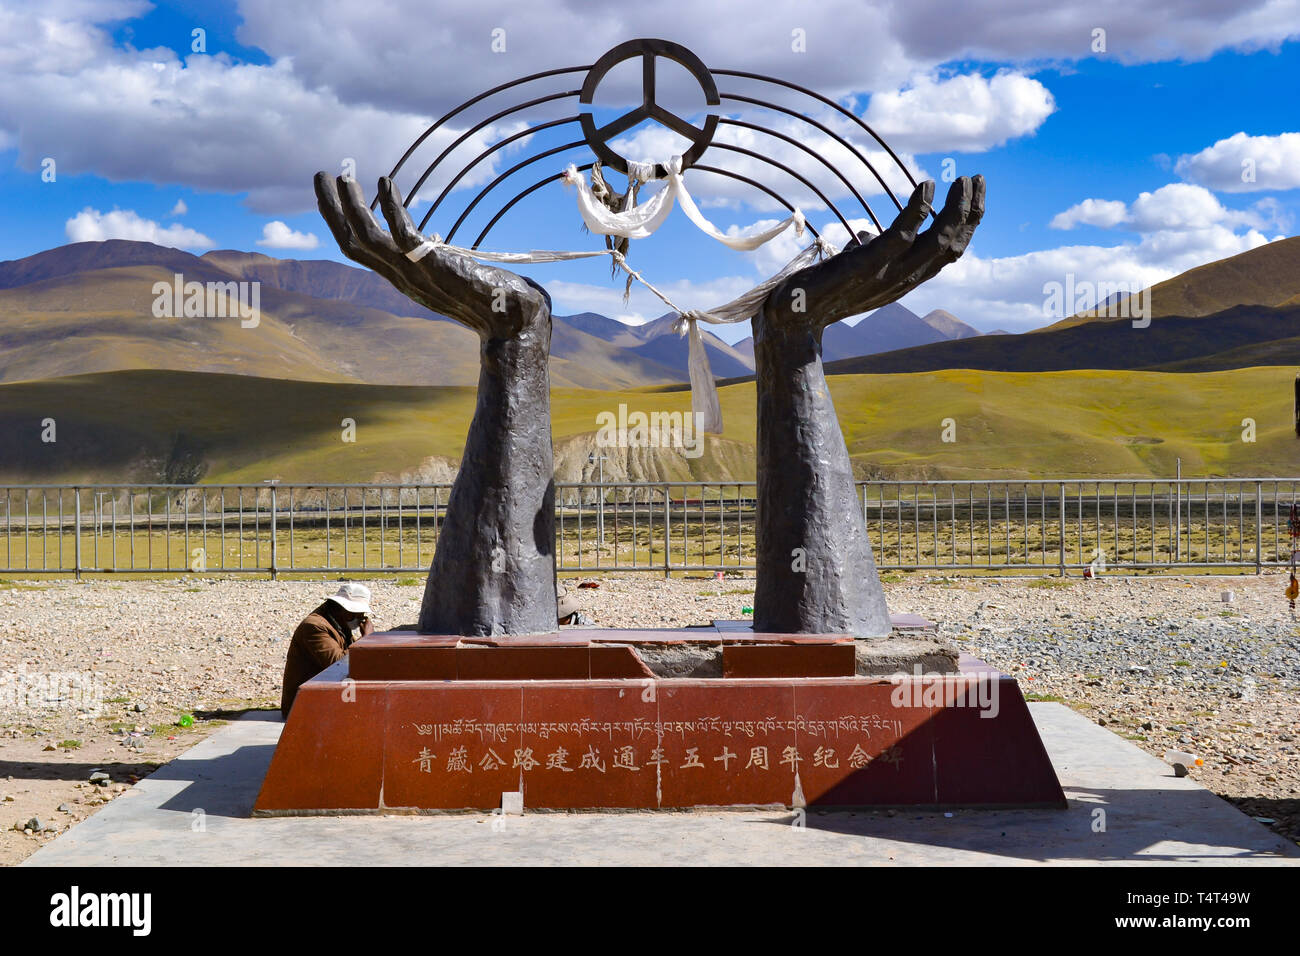 Das Denkmal von Qinghai - Tibet Railway, eine hohe - Höhe Eisenbahn auf der tibetischen Hochebene in Tibet, China Stockfoto